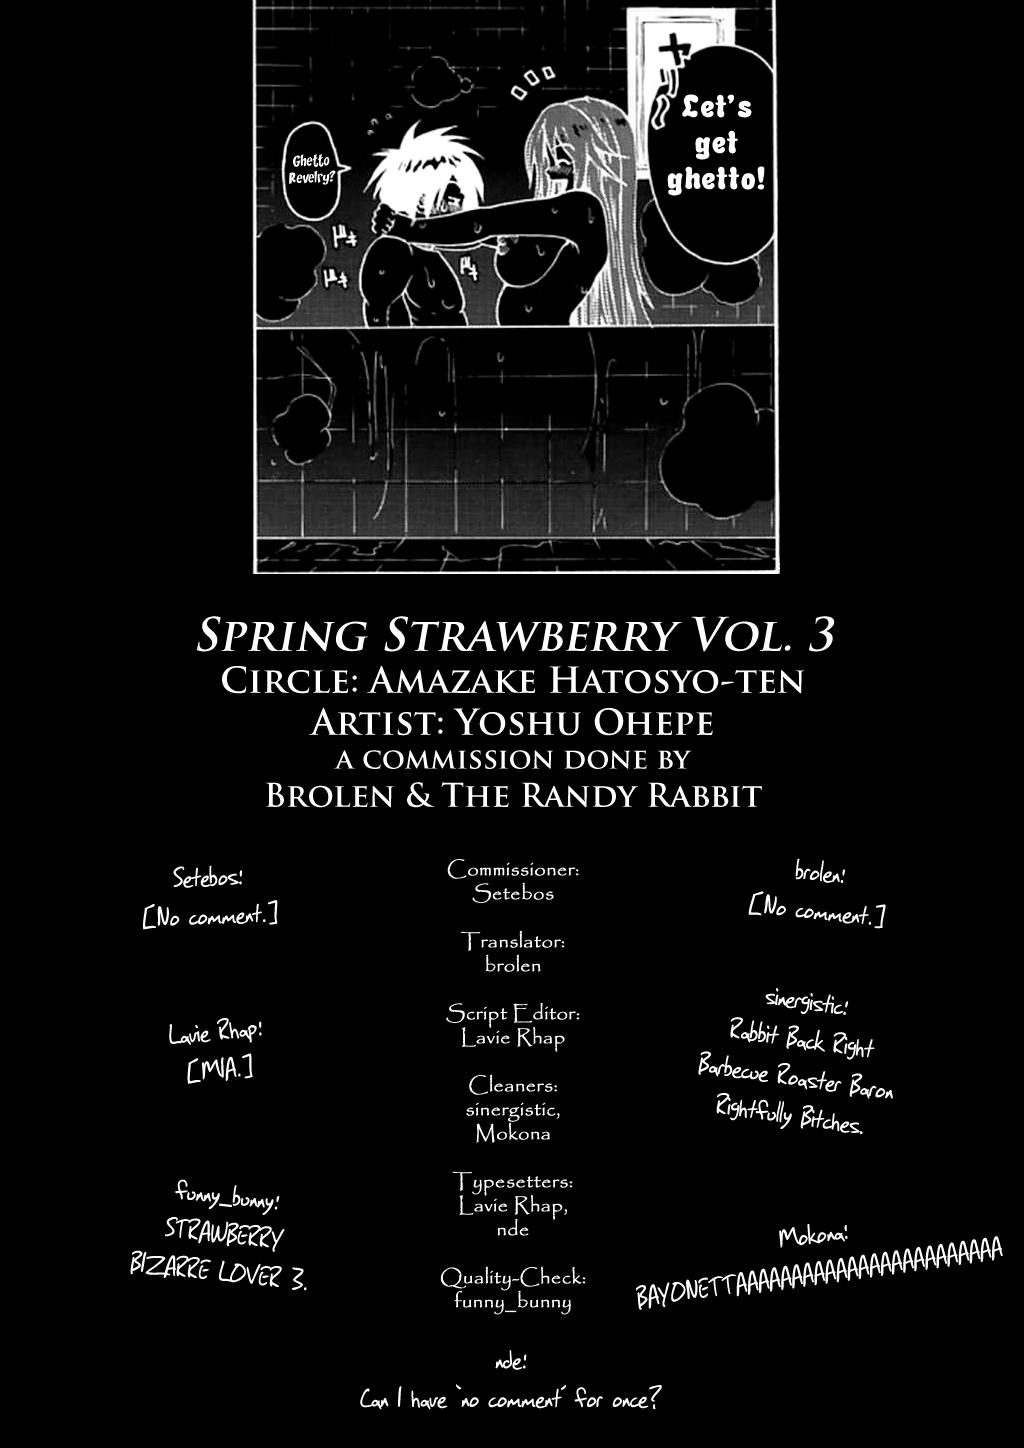 Facebook Haru Ichigo Vol. 3 - Spring Strawberry Vol. 3 - Ichigo 100 Newbie - Page 30